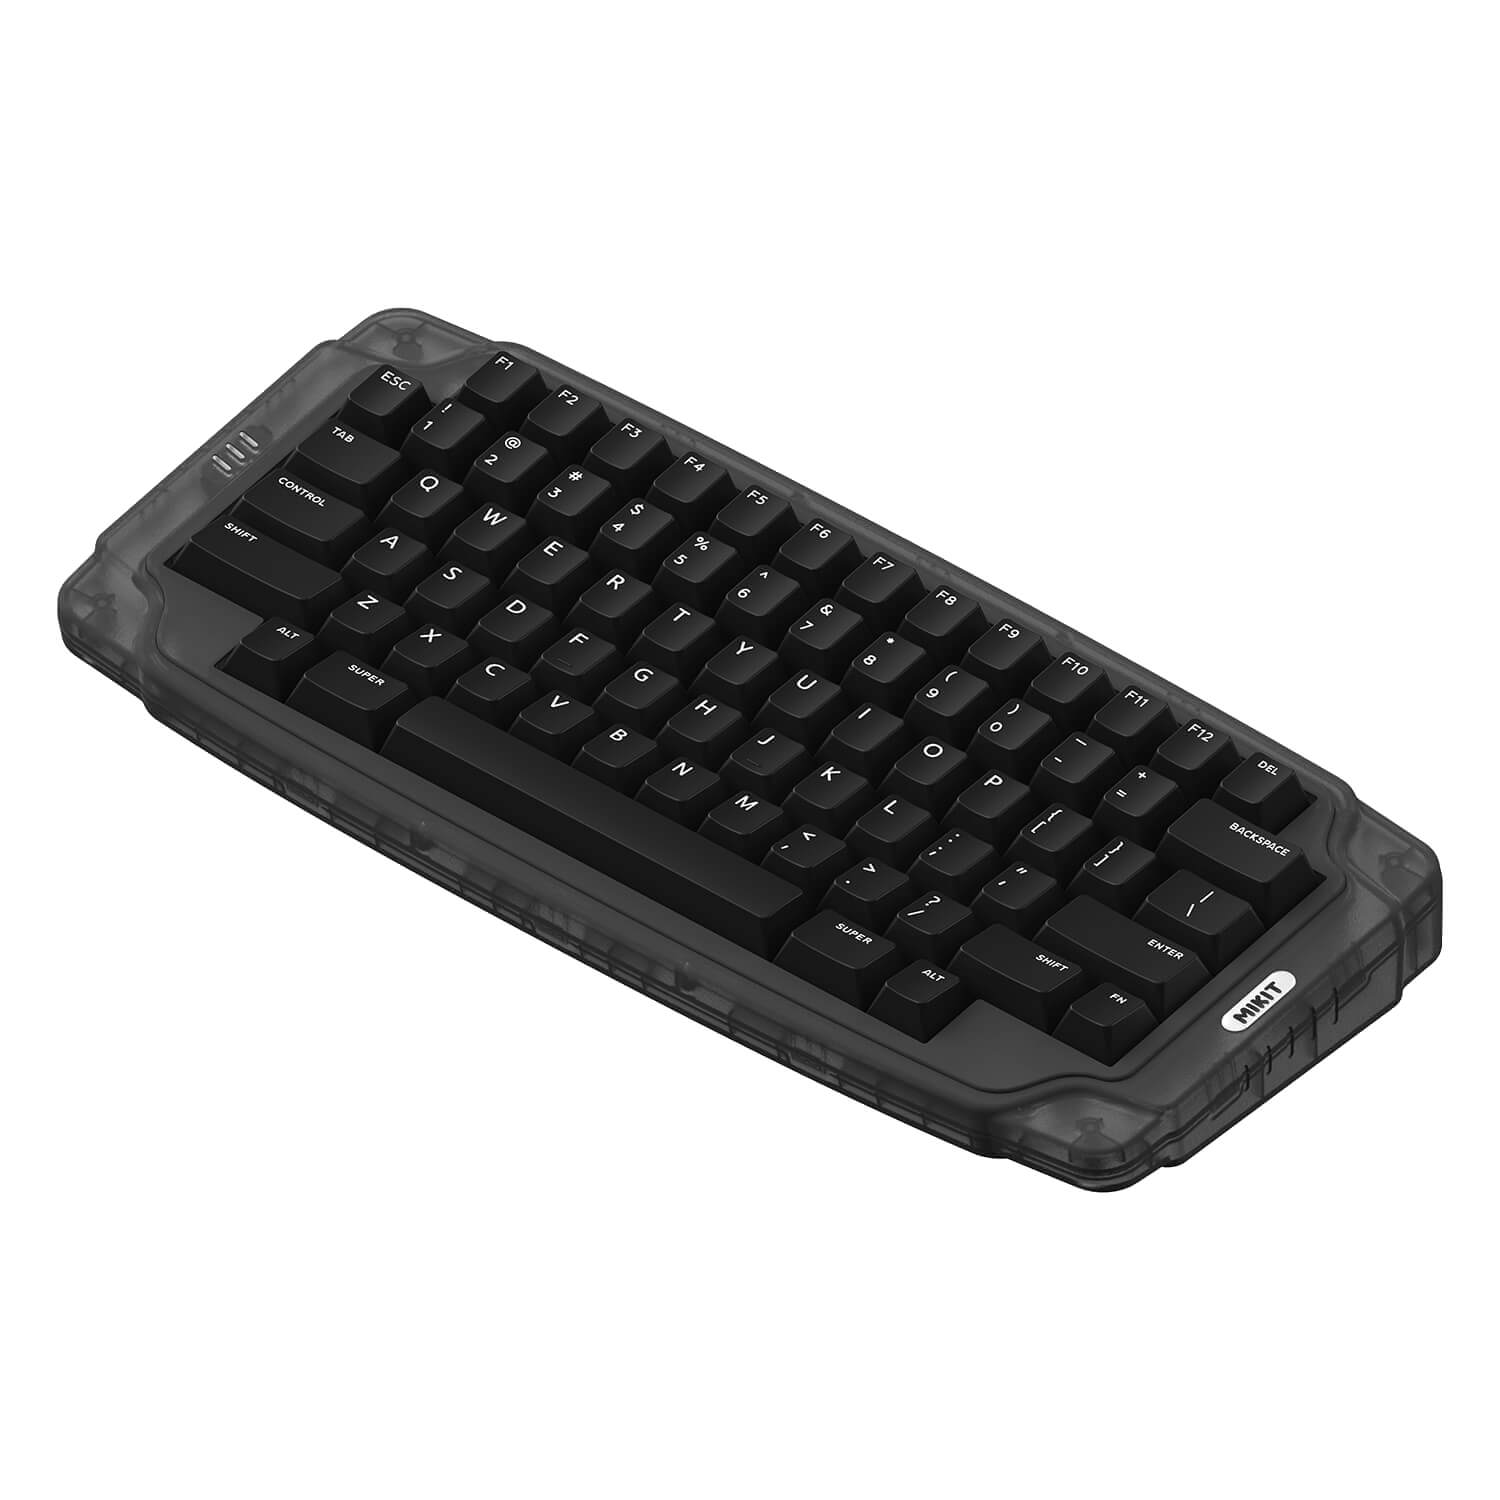 HHKB keyboard, hacking keyboard, gaming keyboard, coding keyboard